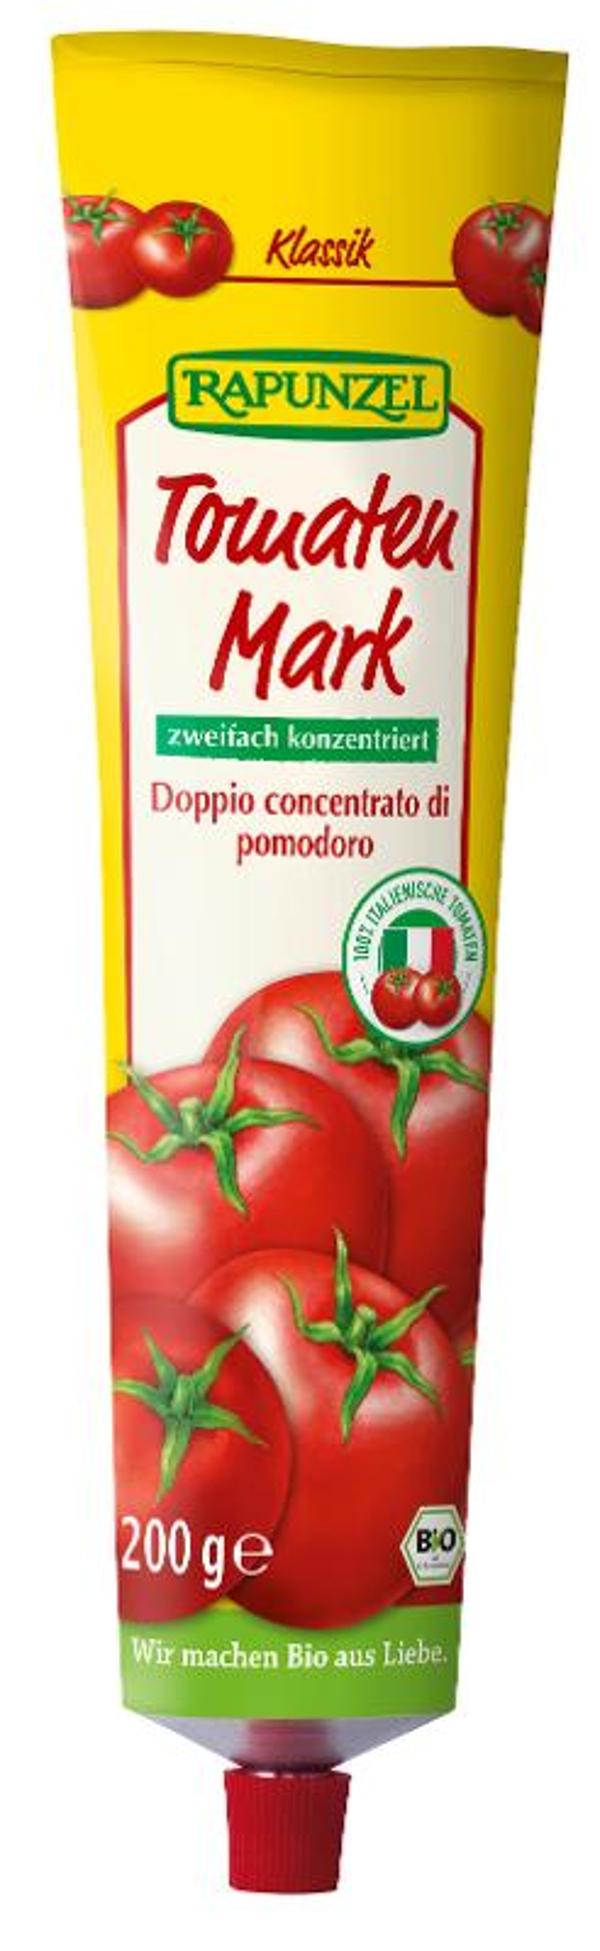 Produktfoto zu Tomatenmark in der Tube, zweifach konzentr. 200g